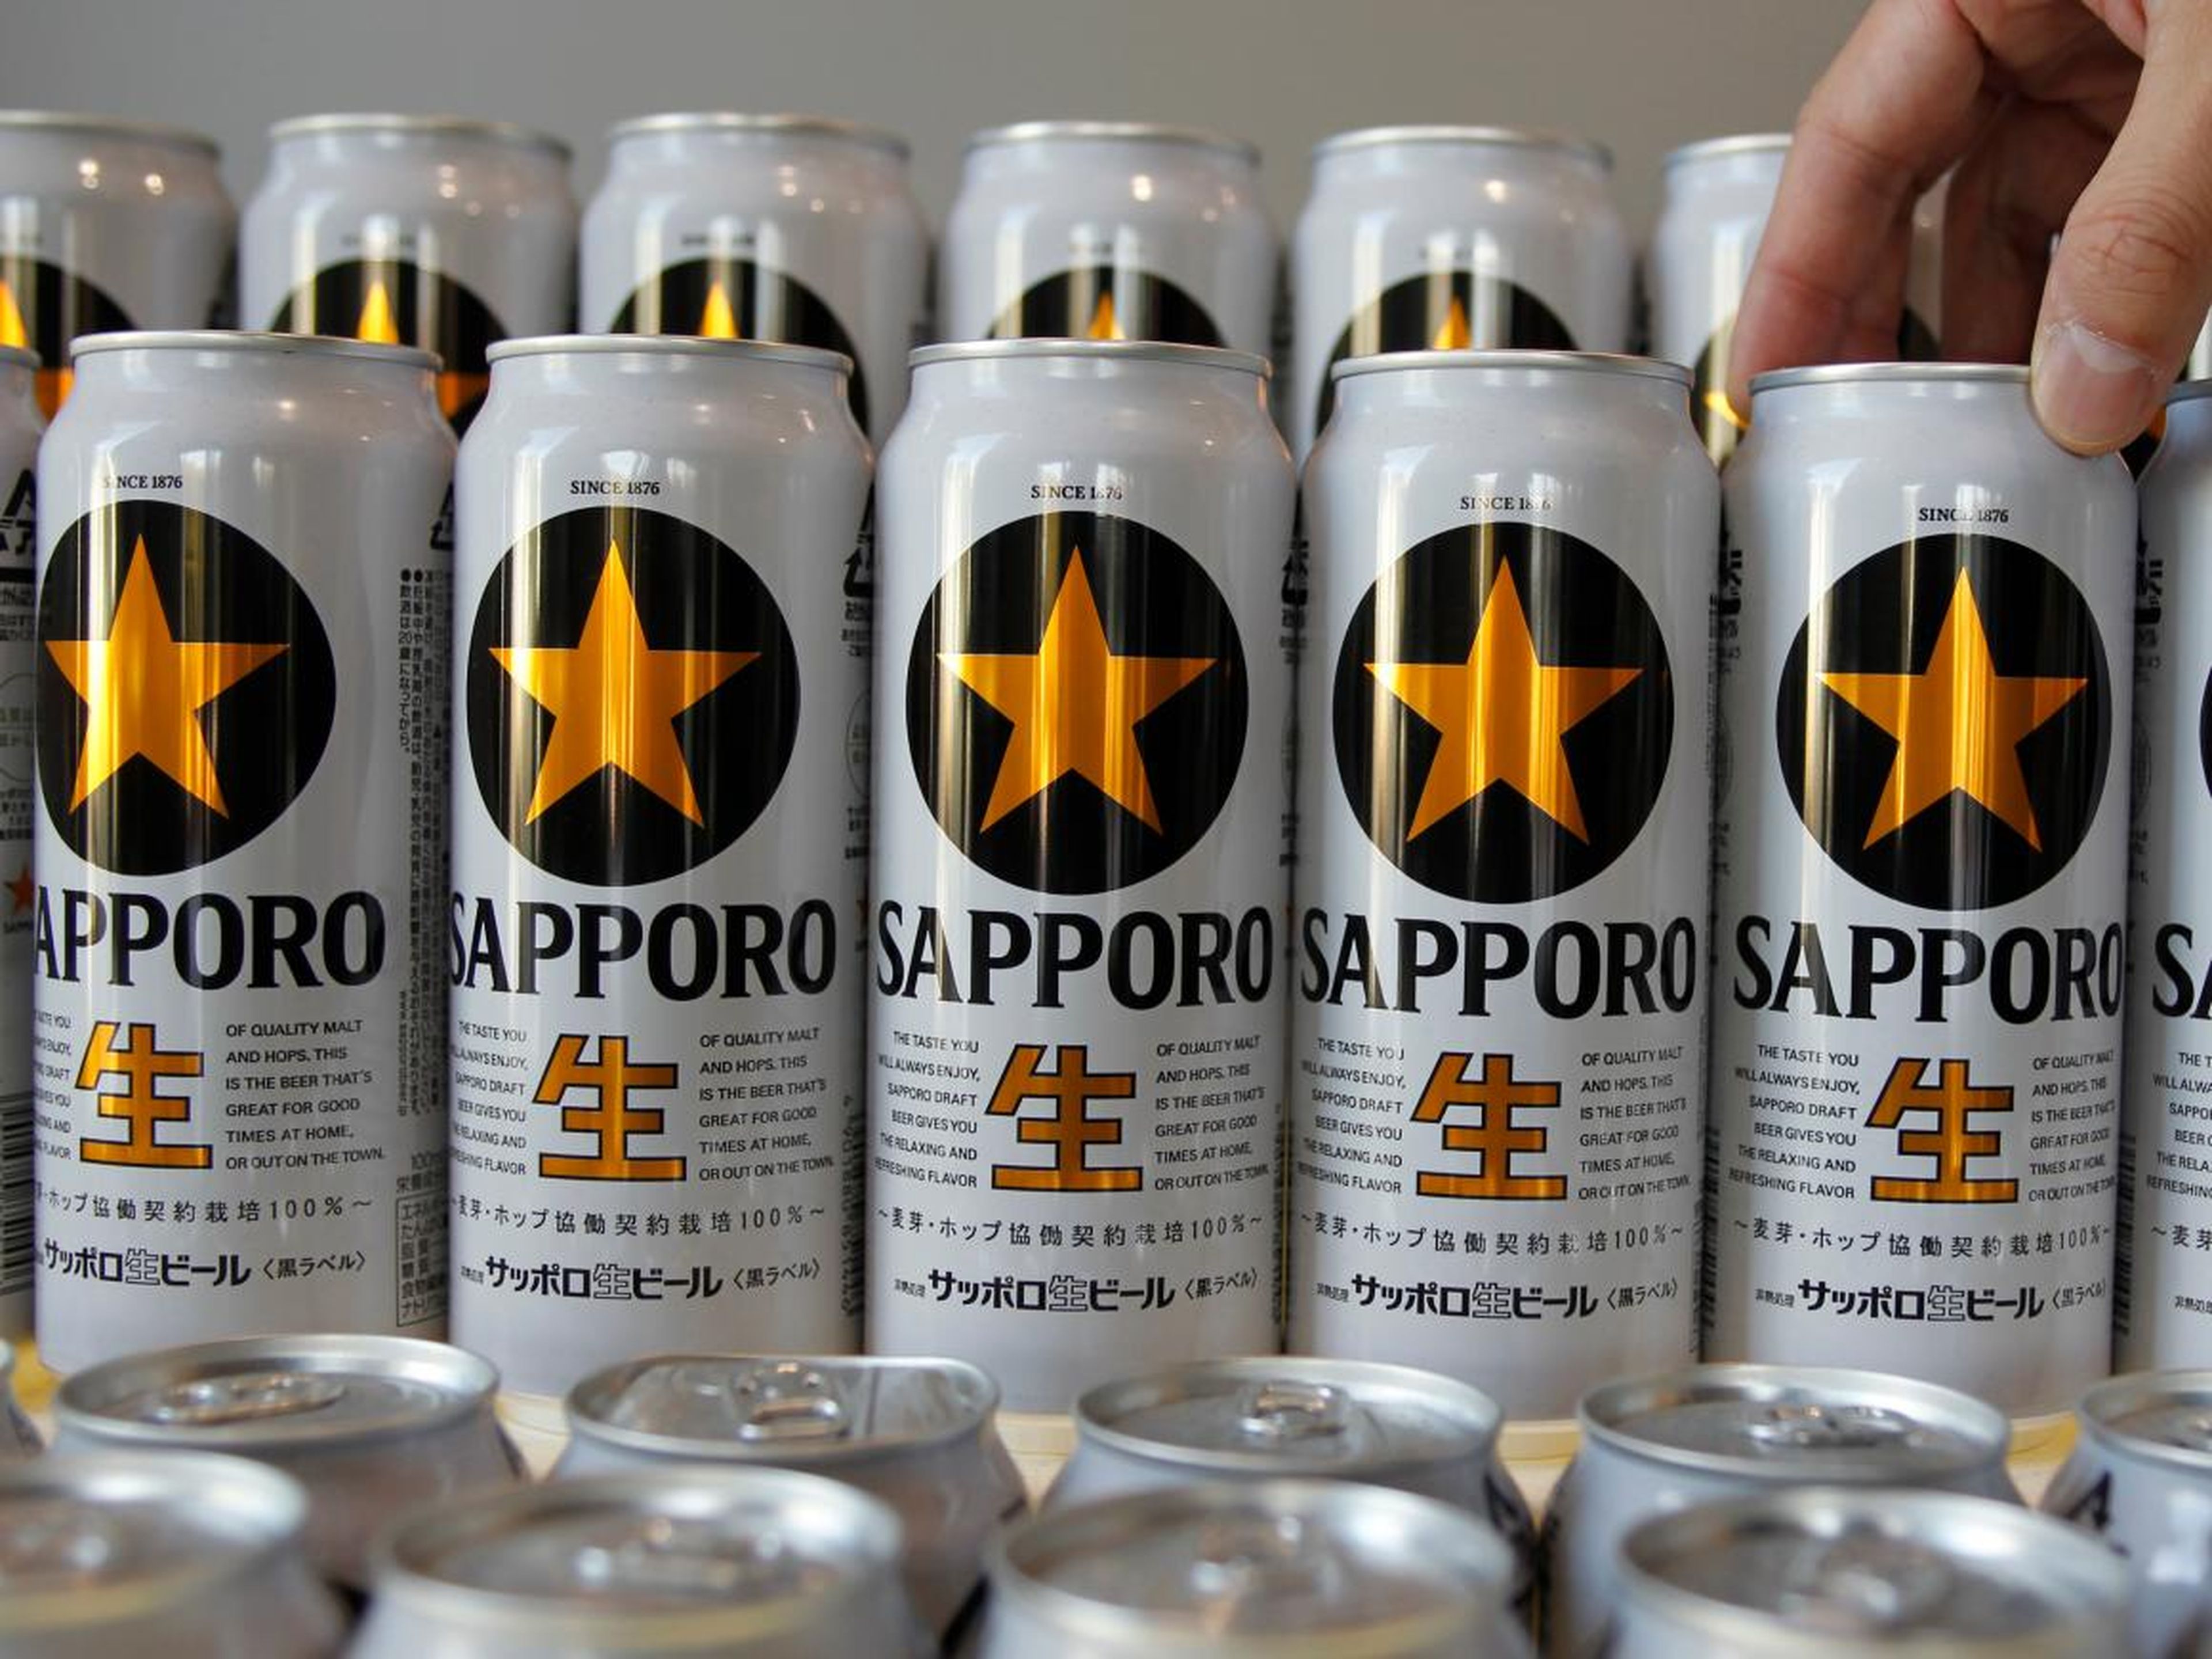 La cerveza es una parte integral de la cultura japonesa y Sapporo es la más antigua del país.